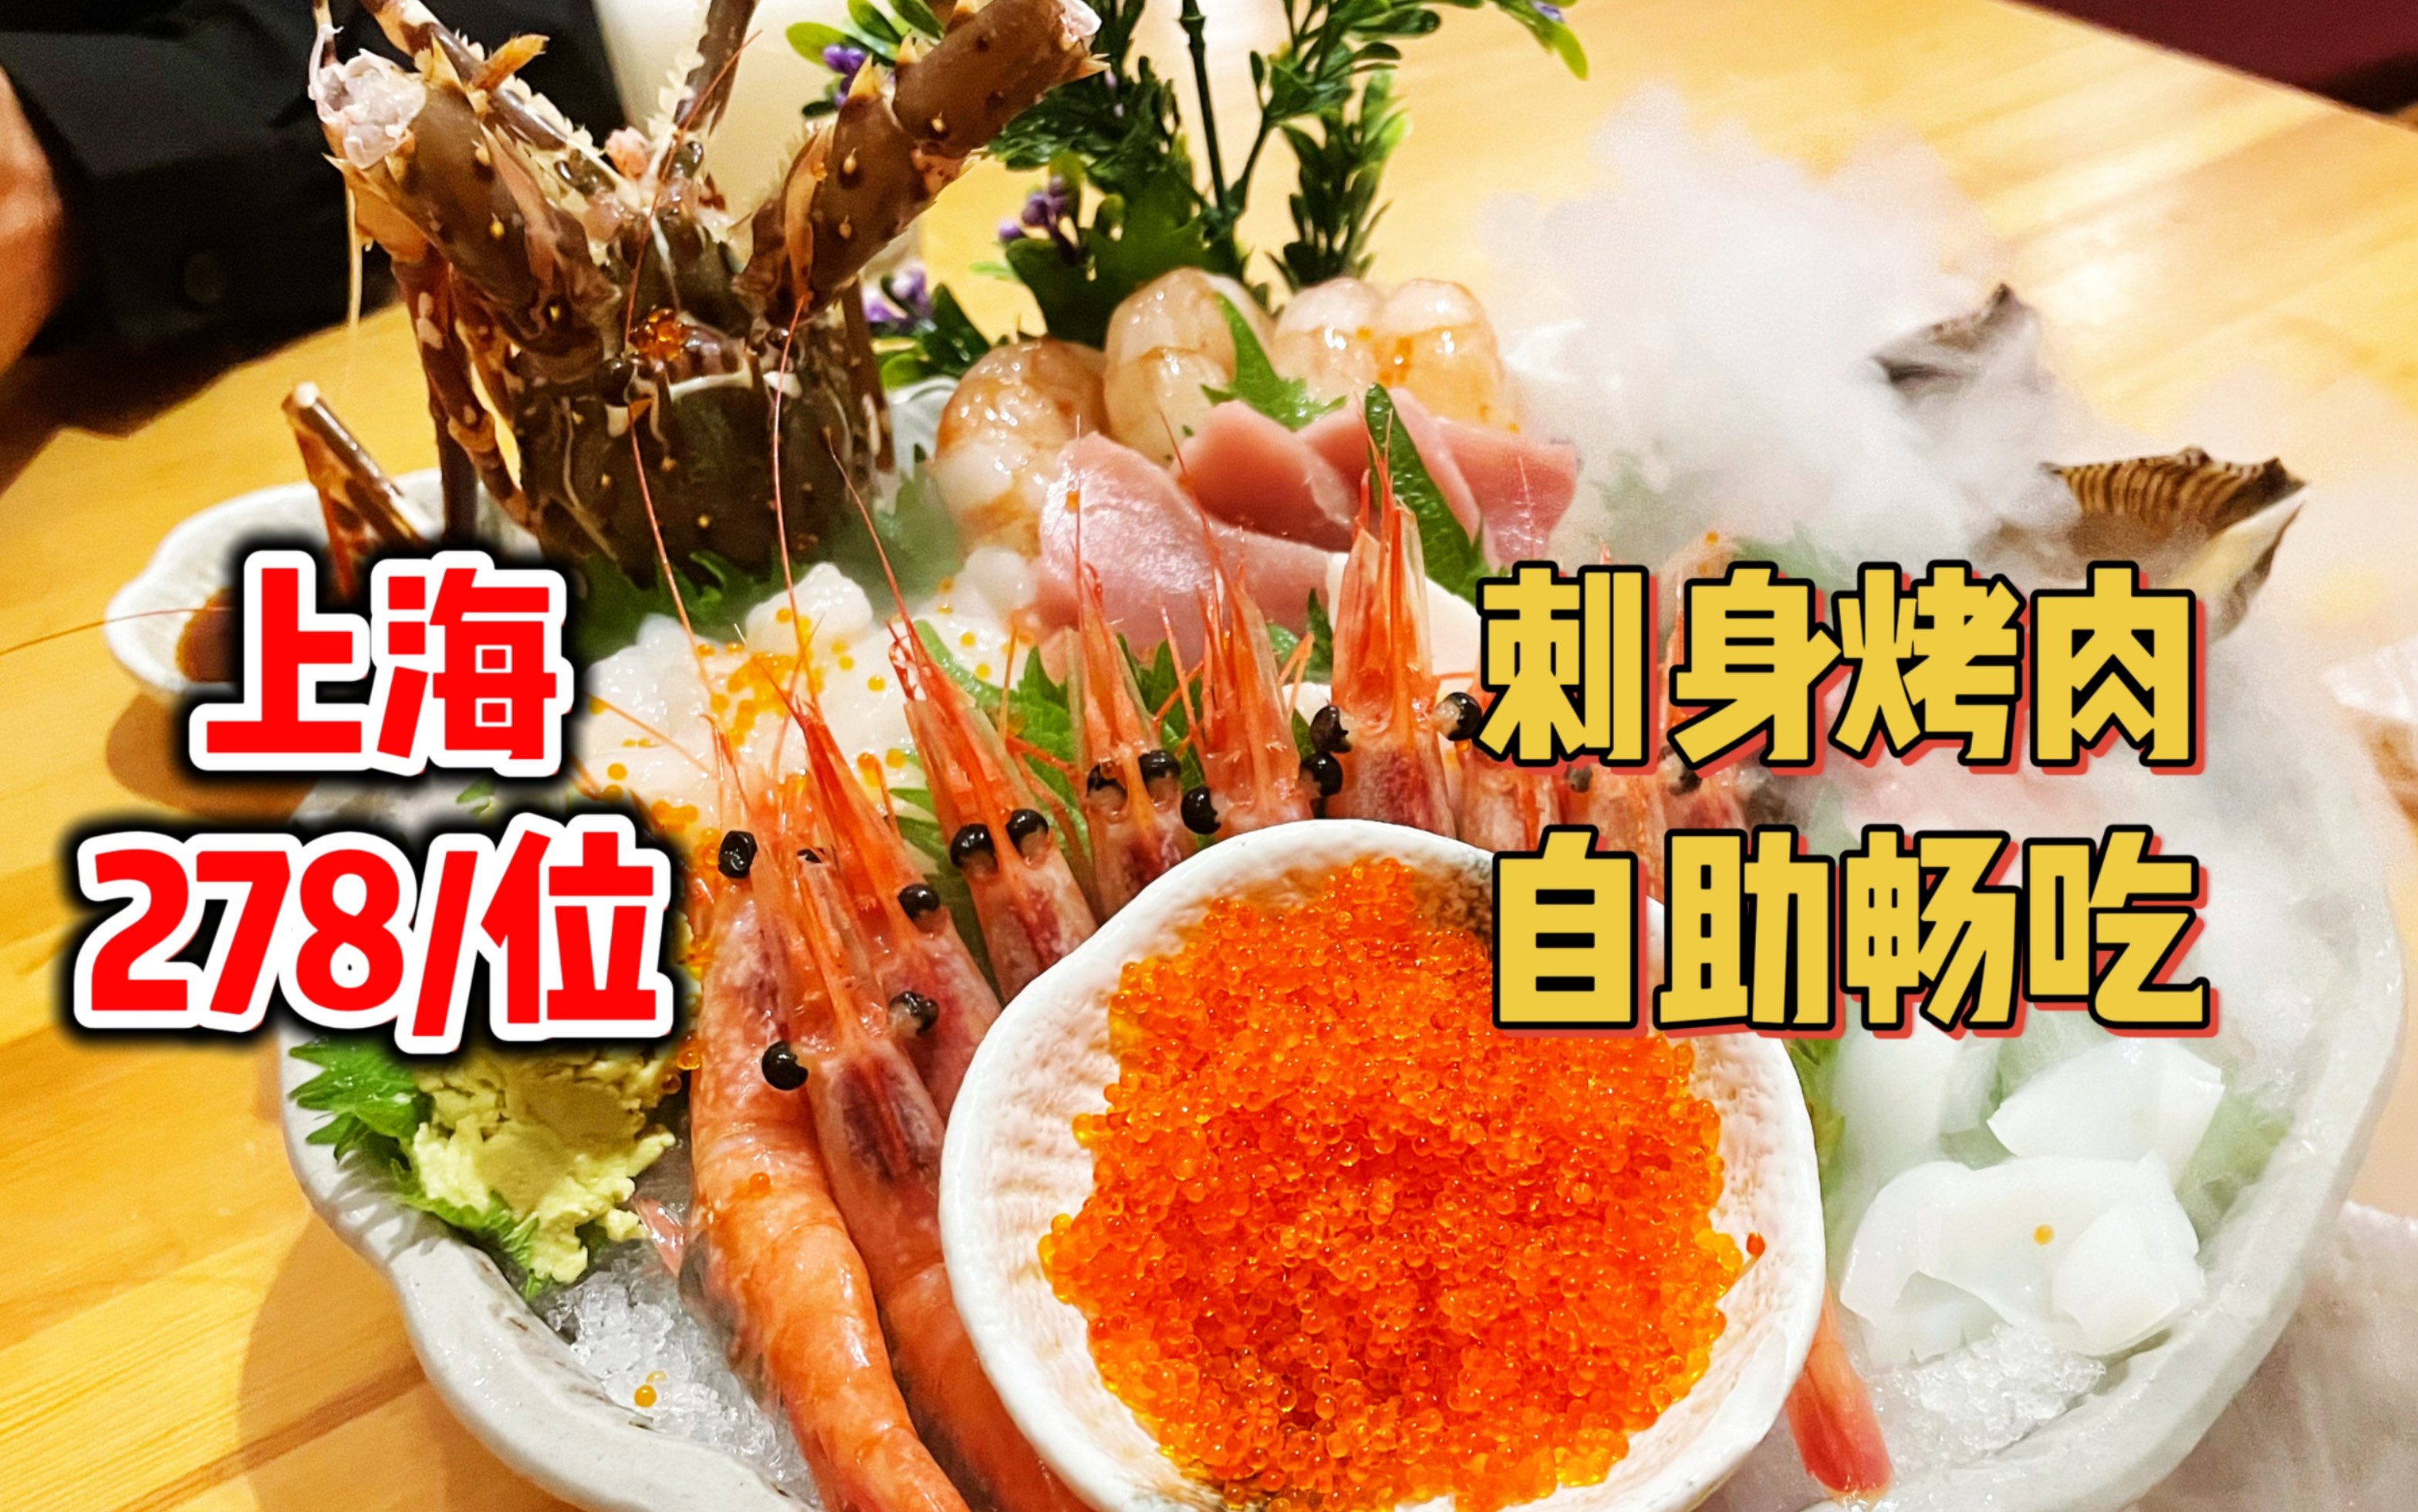 上海278元日料自助，刺身烤肉寿喜烧畅吃！丰富多样的种类，如果味道能更好一点就完美了～